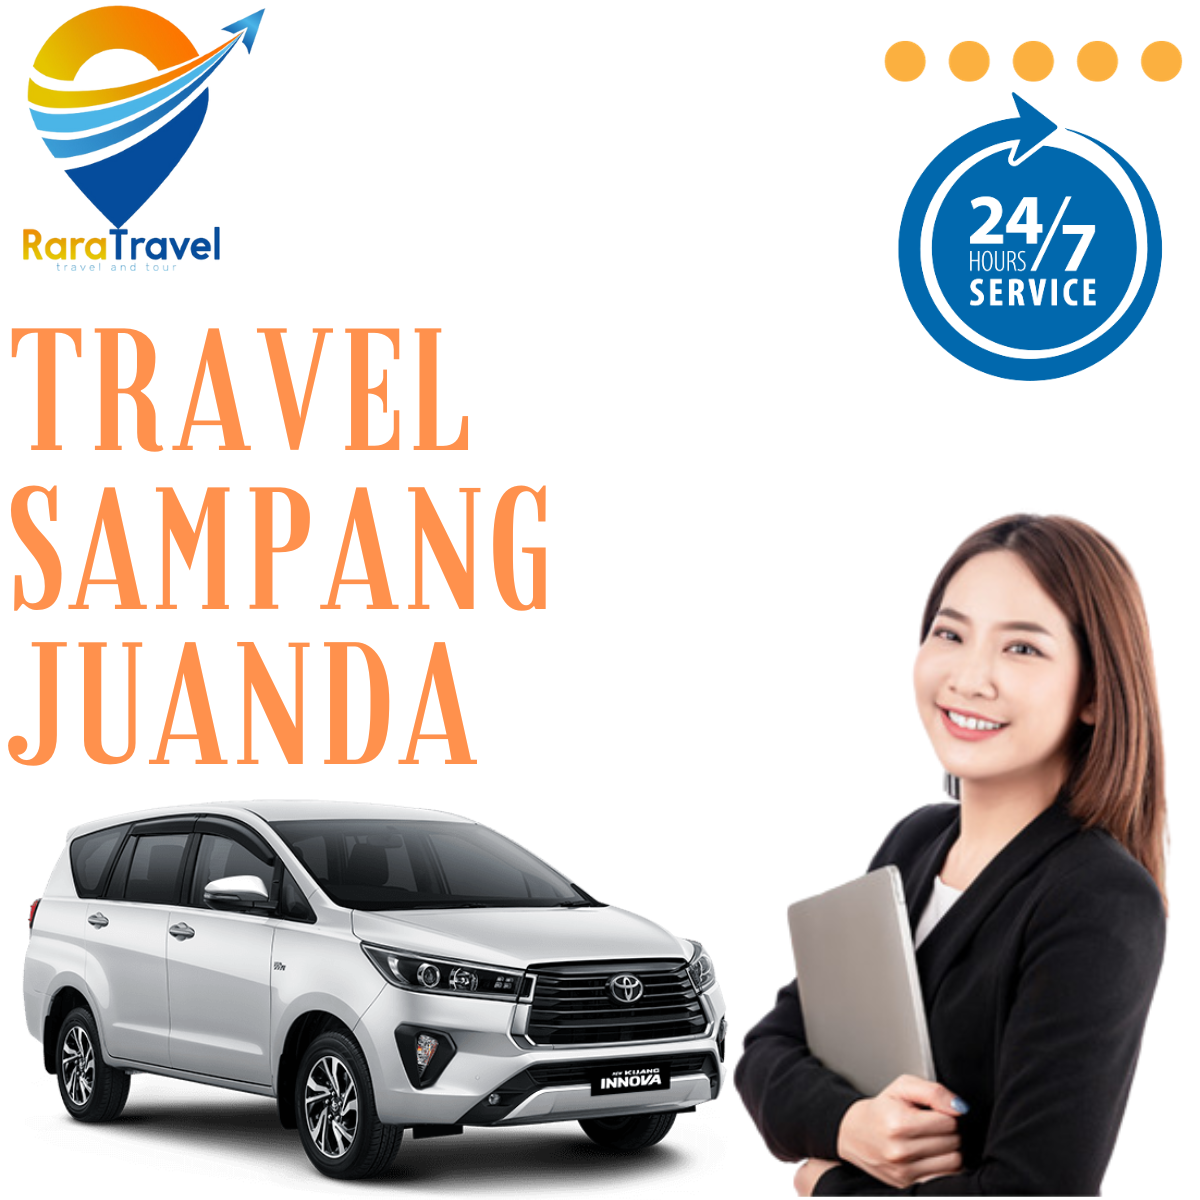 Travel Sampang ke Bandara Juanda PP Murah Harga Mulai Rp 80K - RARATRAVEL.ID